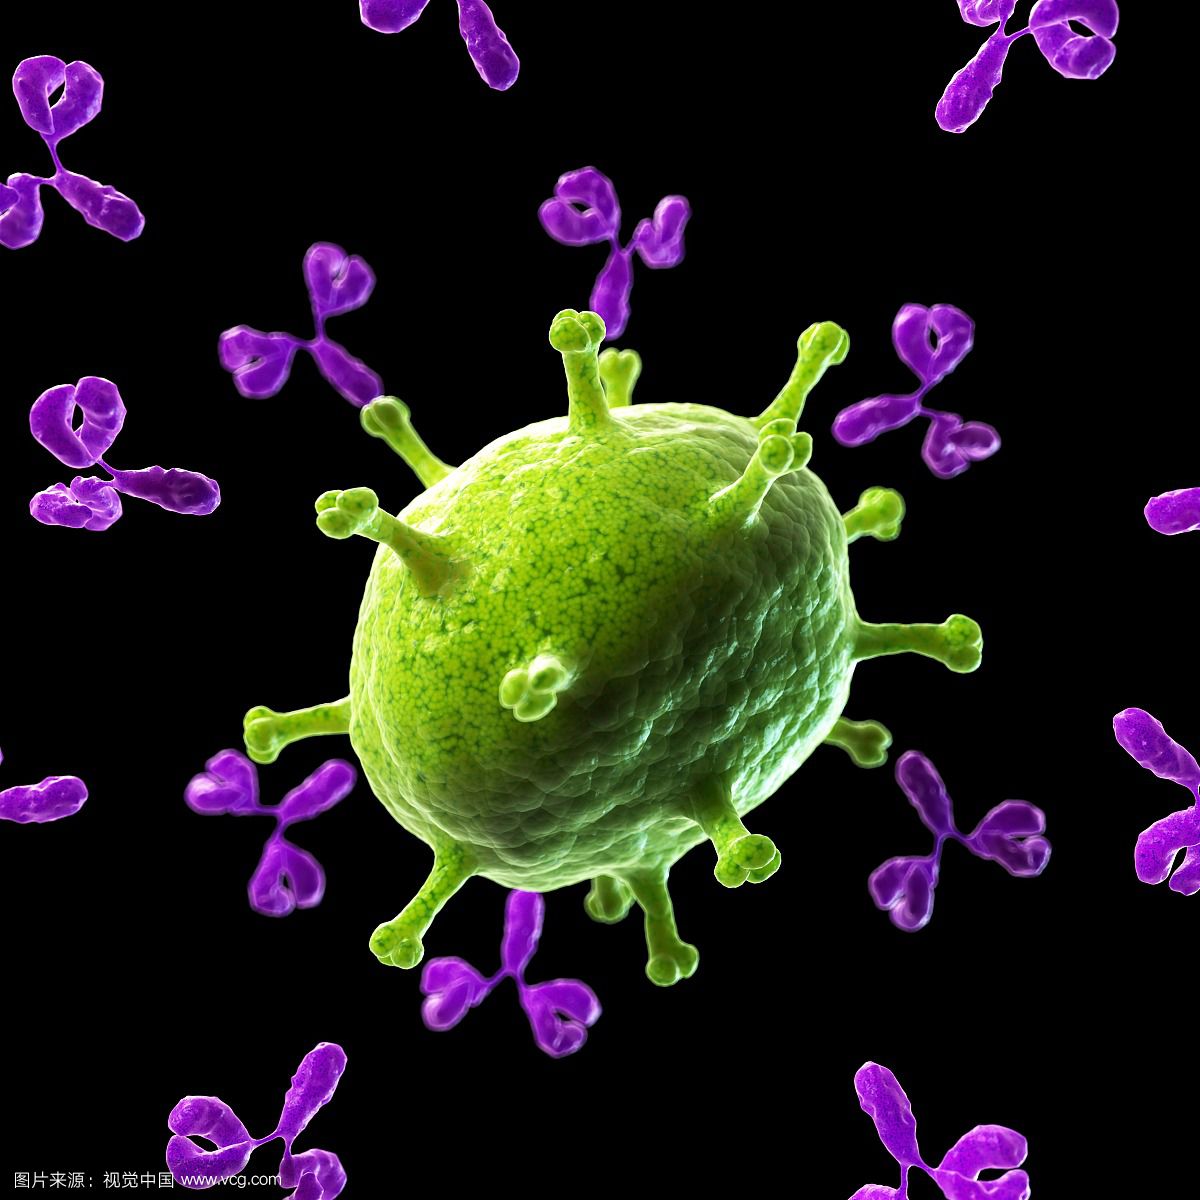 白细胞相关免疫球蛋白样受体1抗体